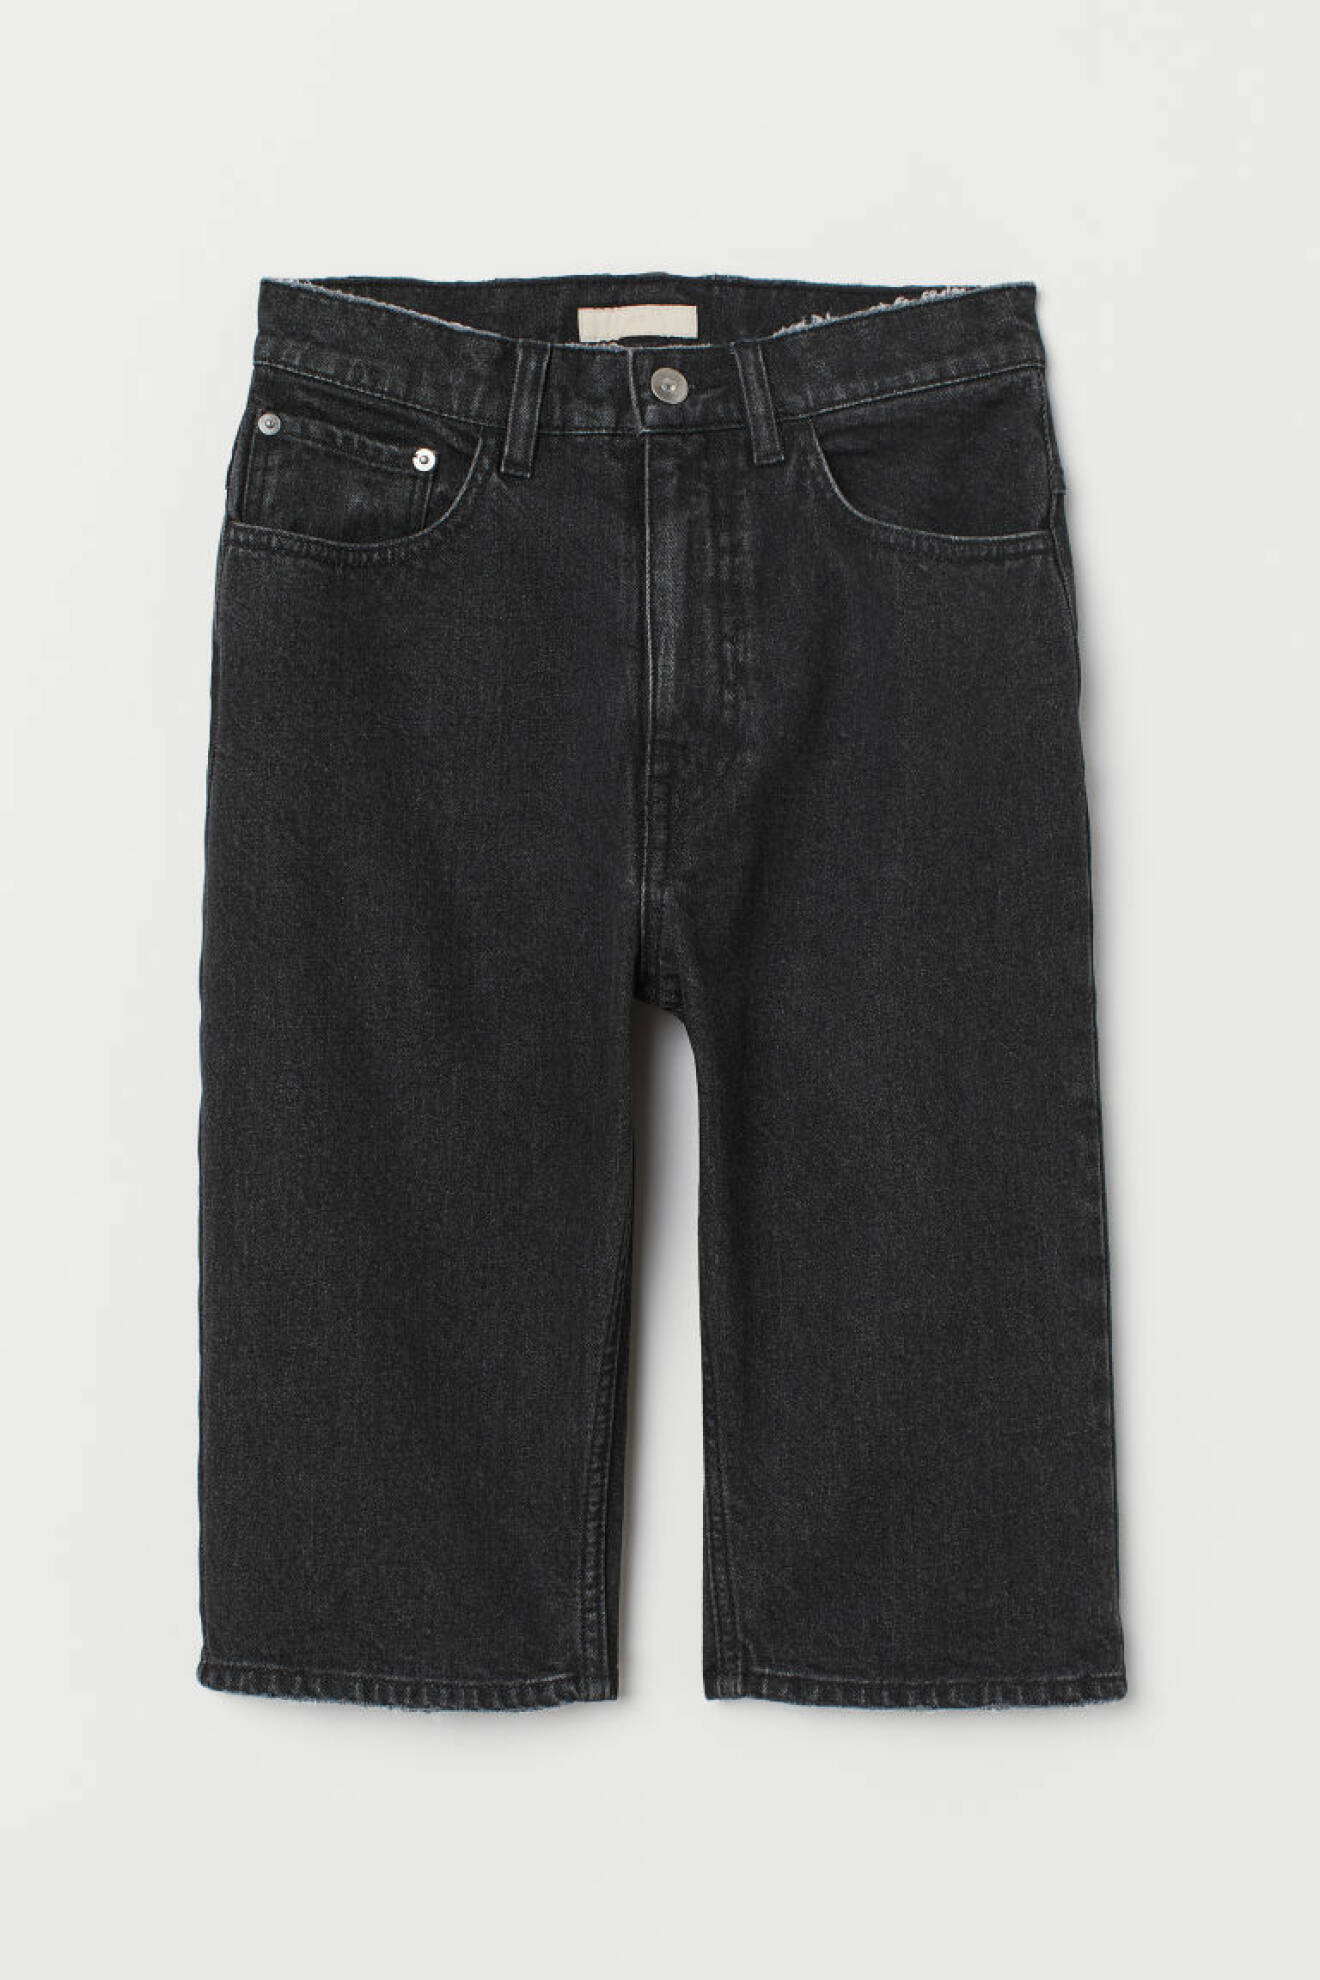 Knälånga jeans i stretchig denim och mörk tvätt, från H&M.